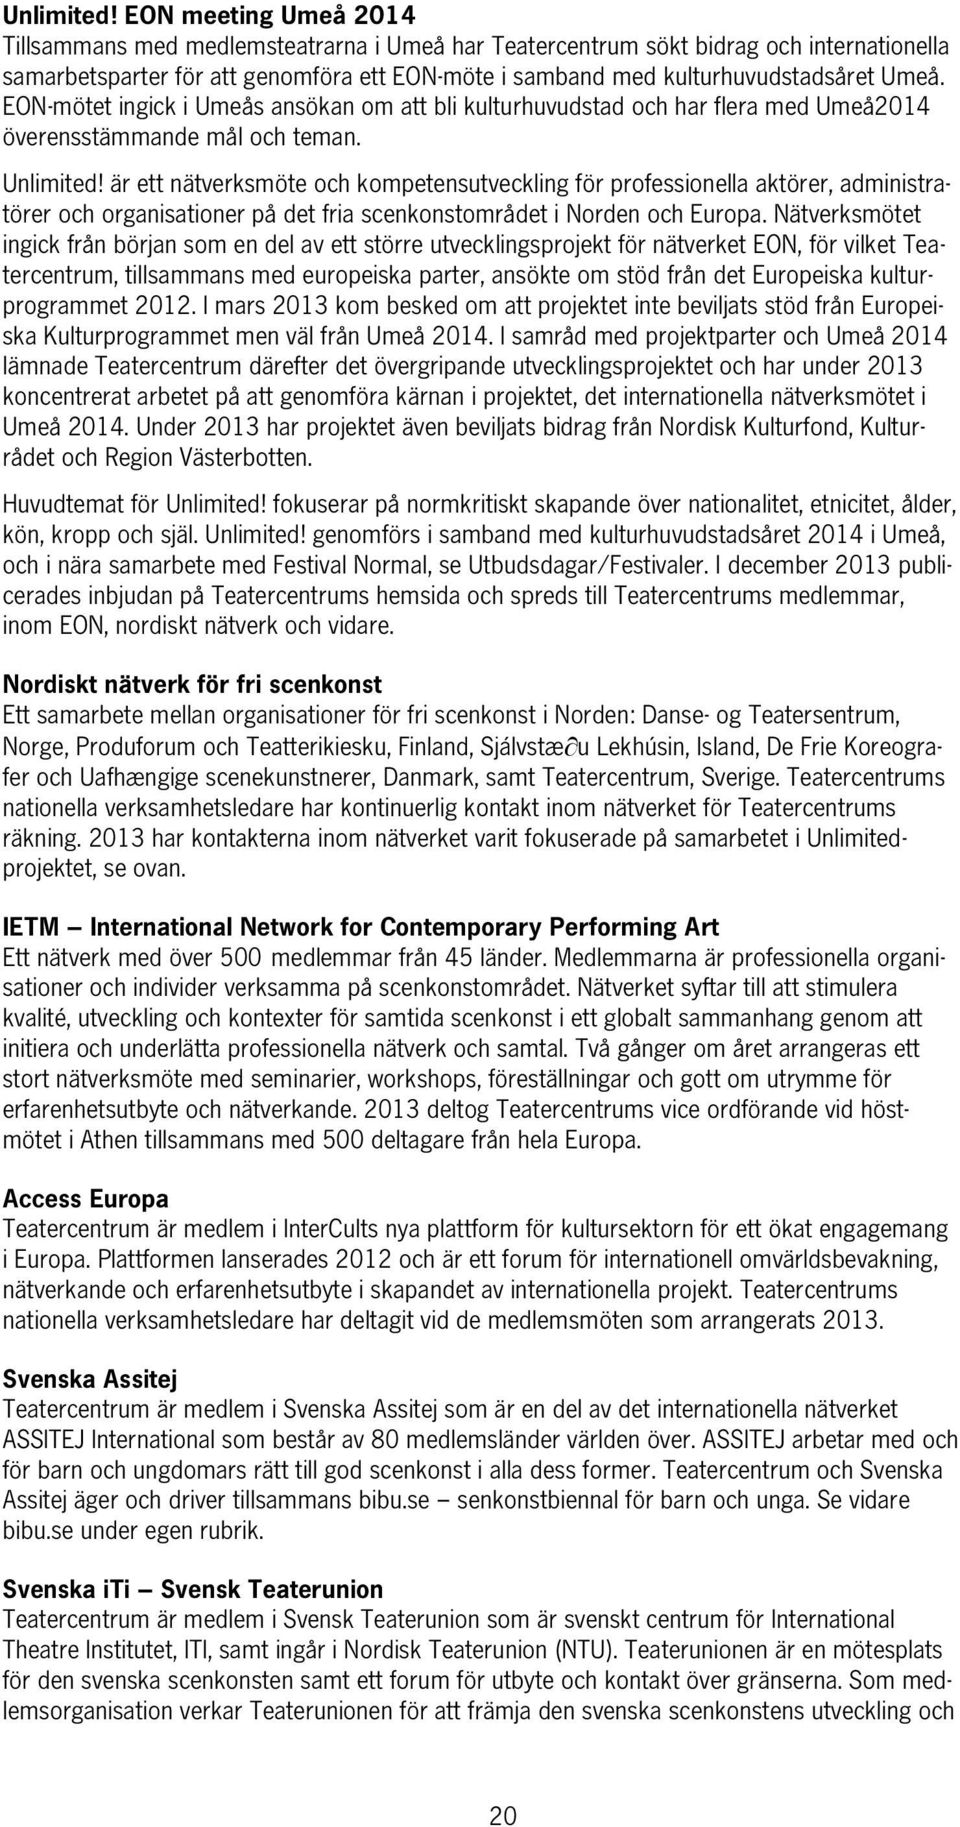 EON-mötet ingick i Umeås ansökan om att bli kulturhuvudstad och har flera med Umeå2014 överensstämmande mål och teman.